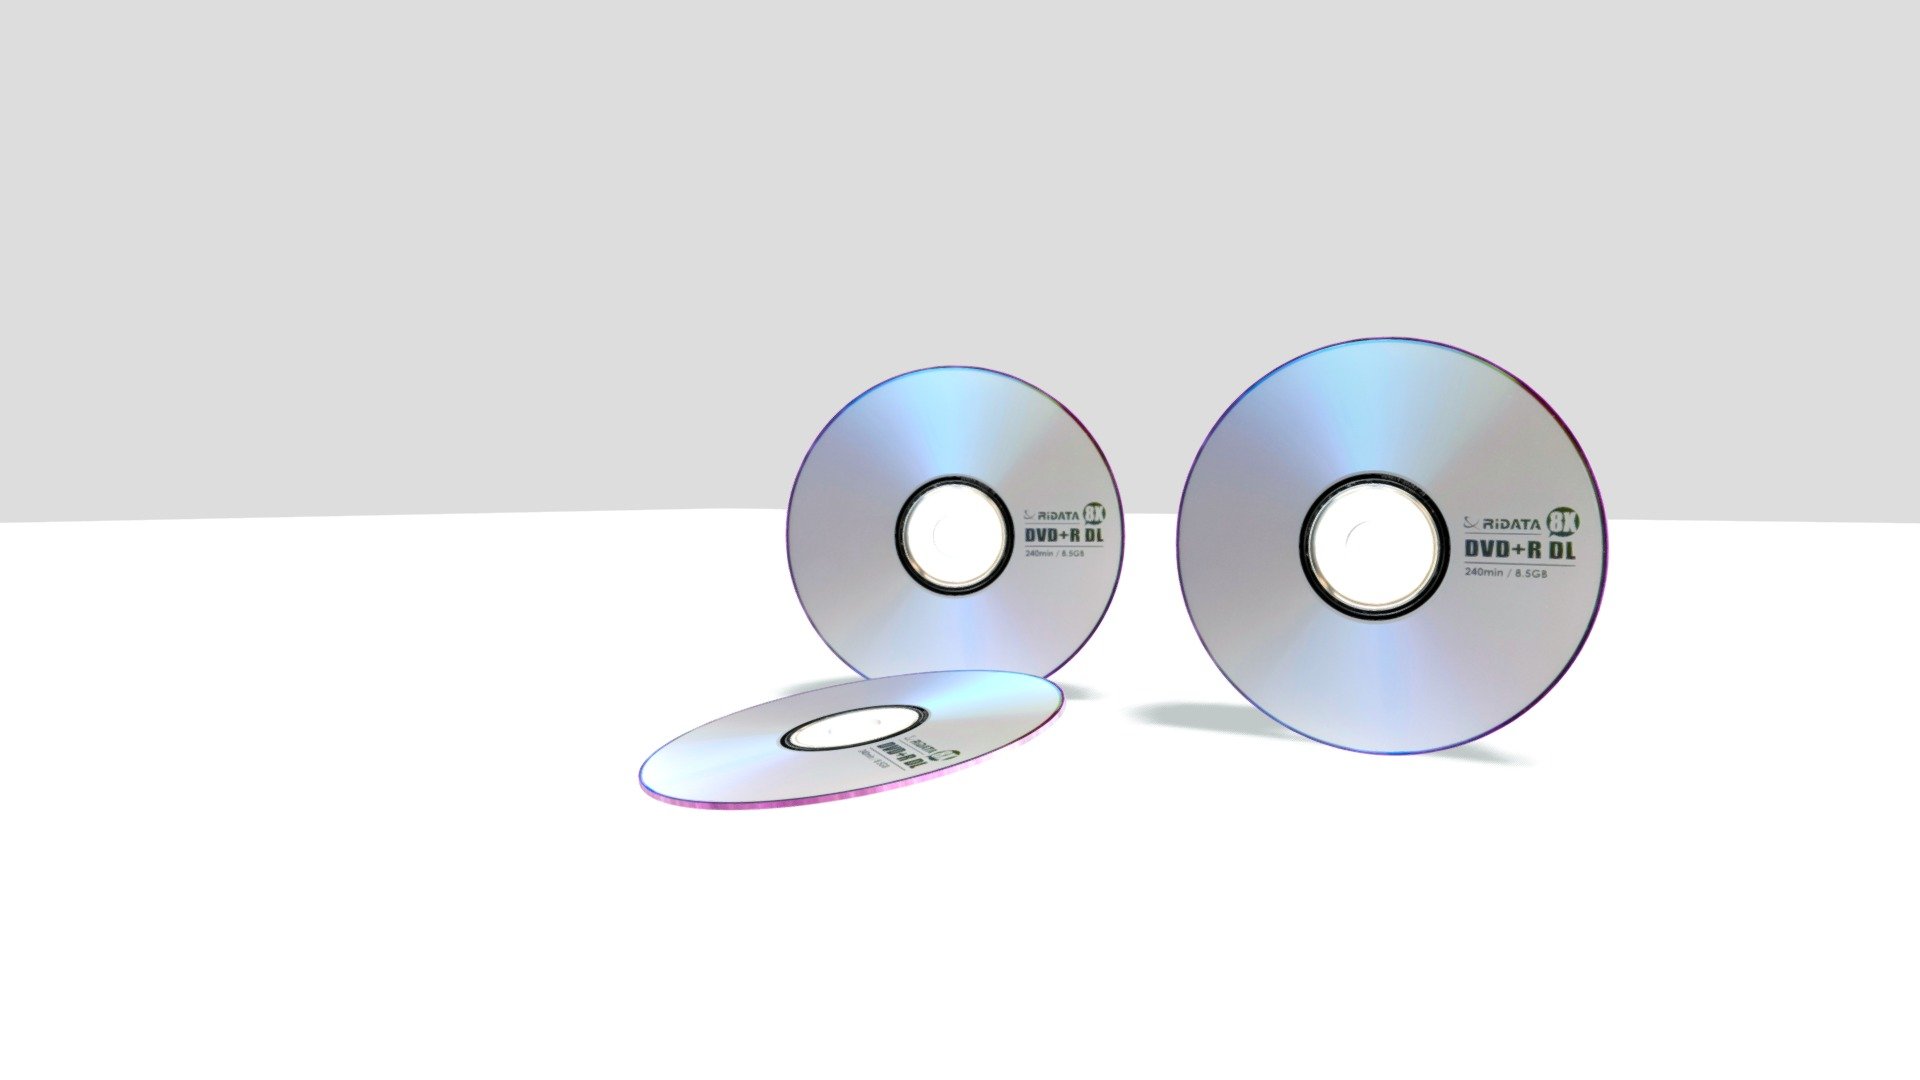 DVD_CD - 3D model by netmicha2016 3d model